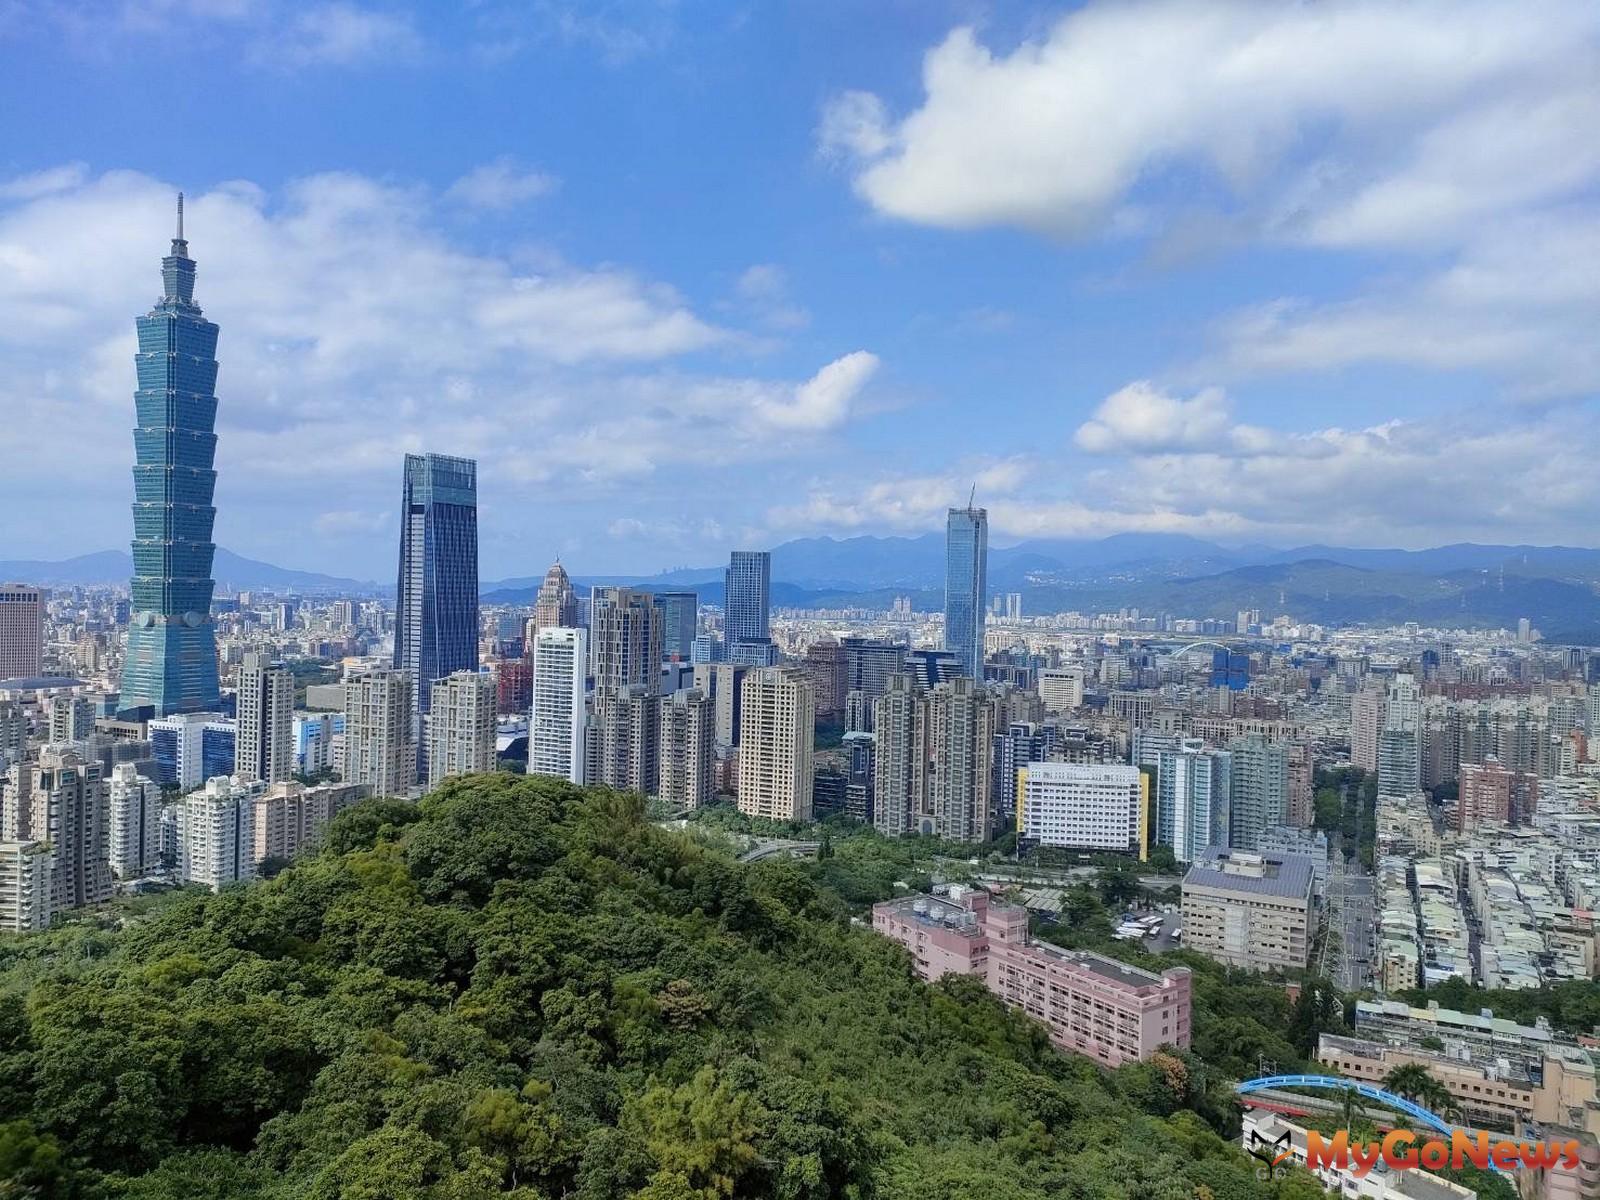 即使全球經濟預測皆趨向保守，但台北市的辦公室租賃市場短期仍將呈現定、平緩的成長，主要有3大利多因素支撐。 MyGoNews房地產新聞 趨勢報導